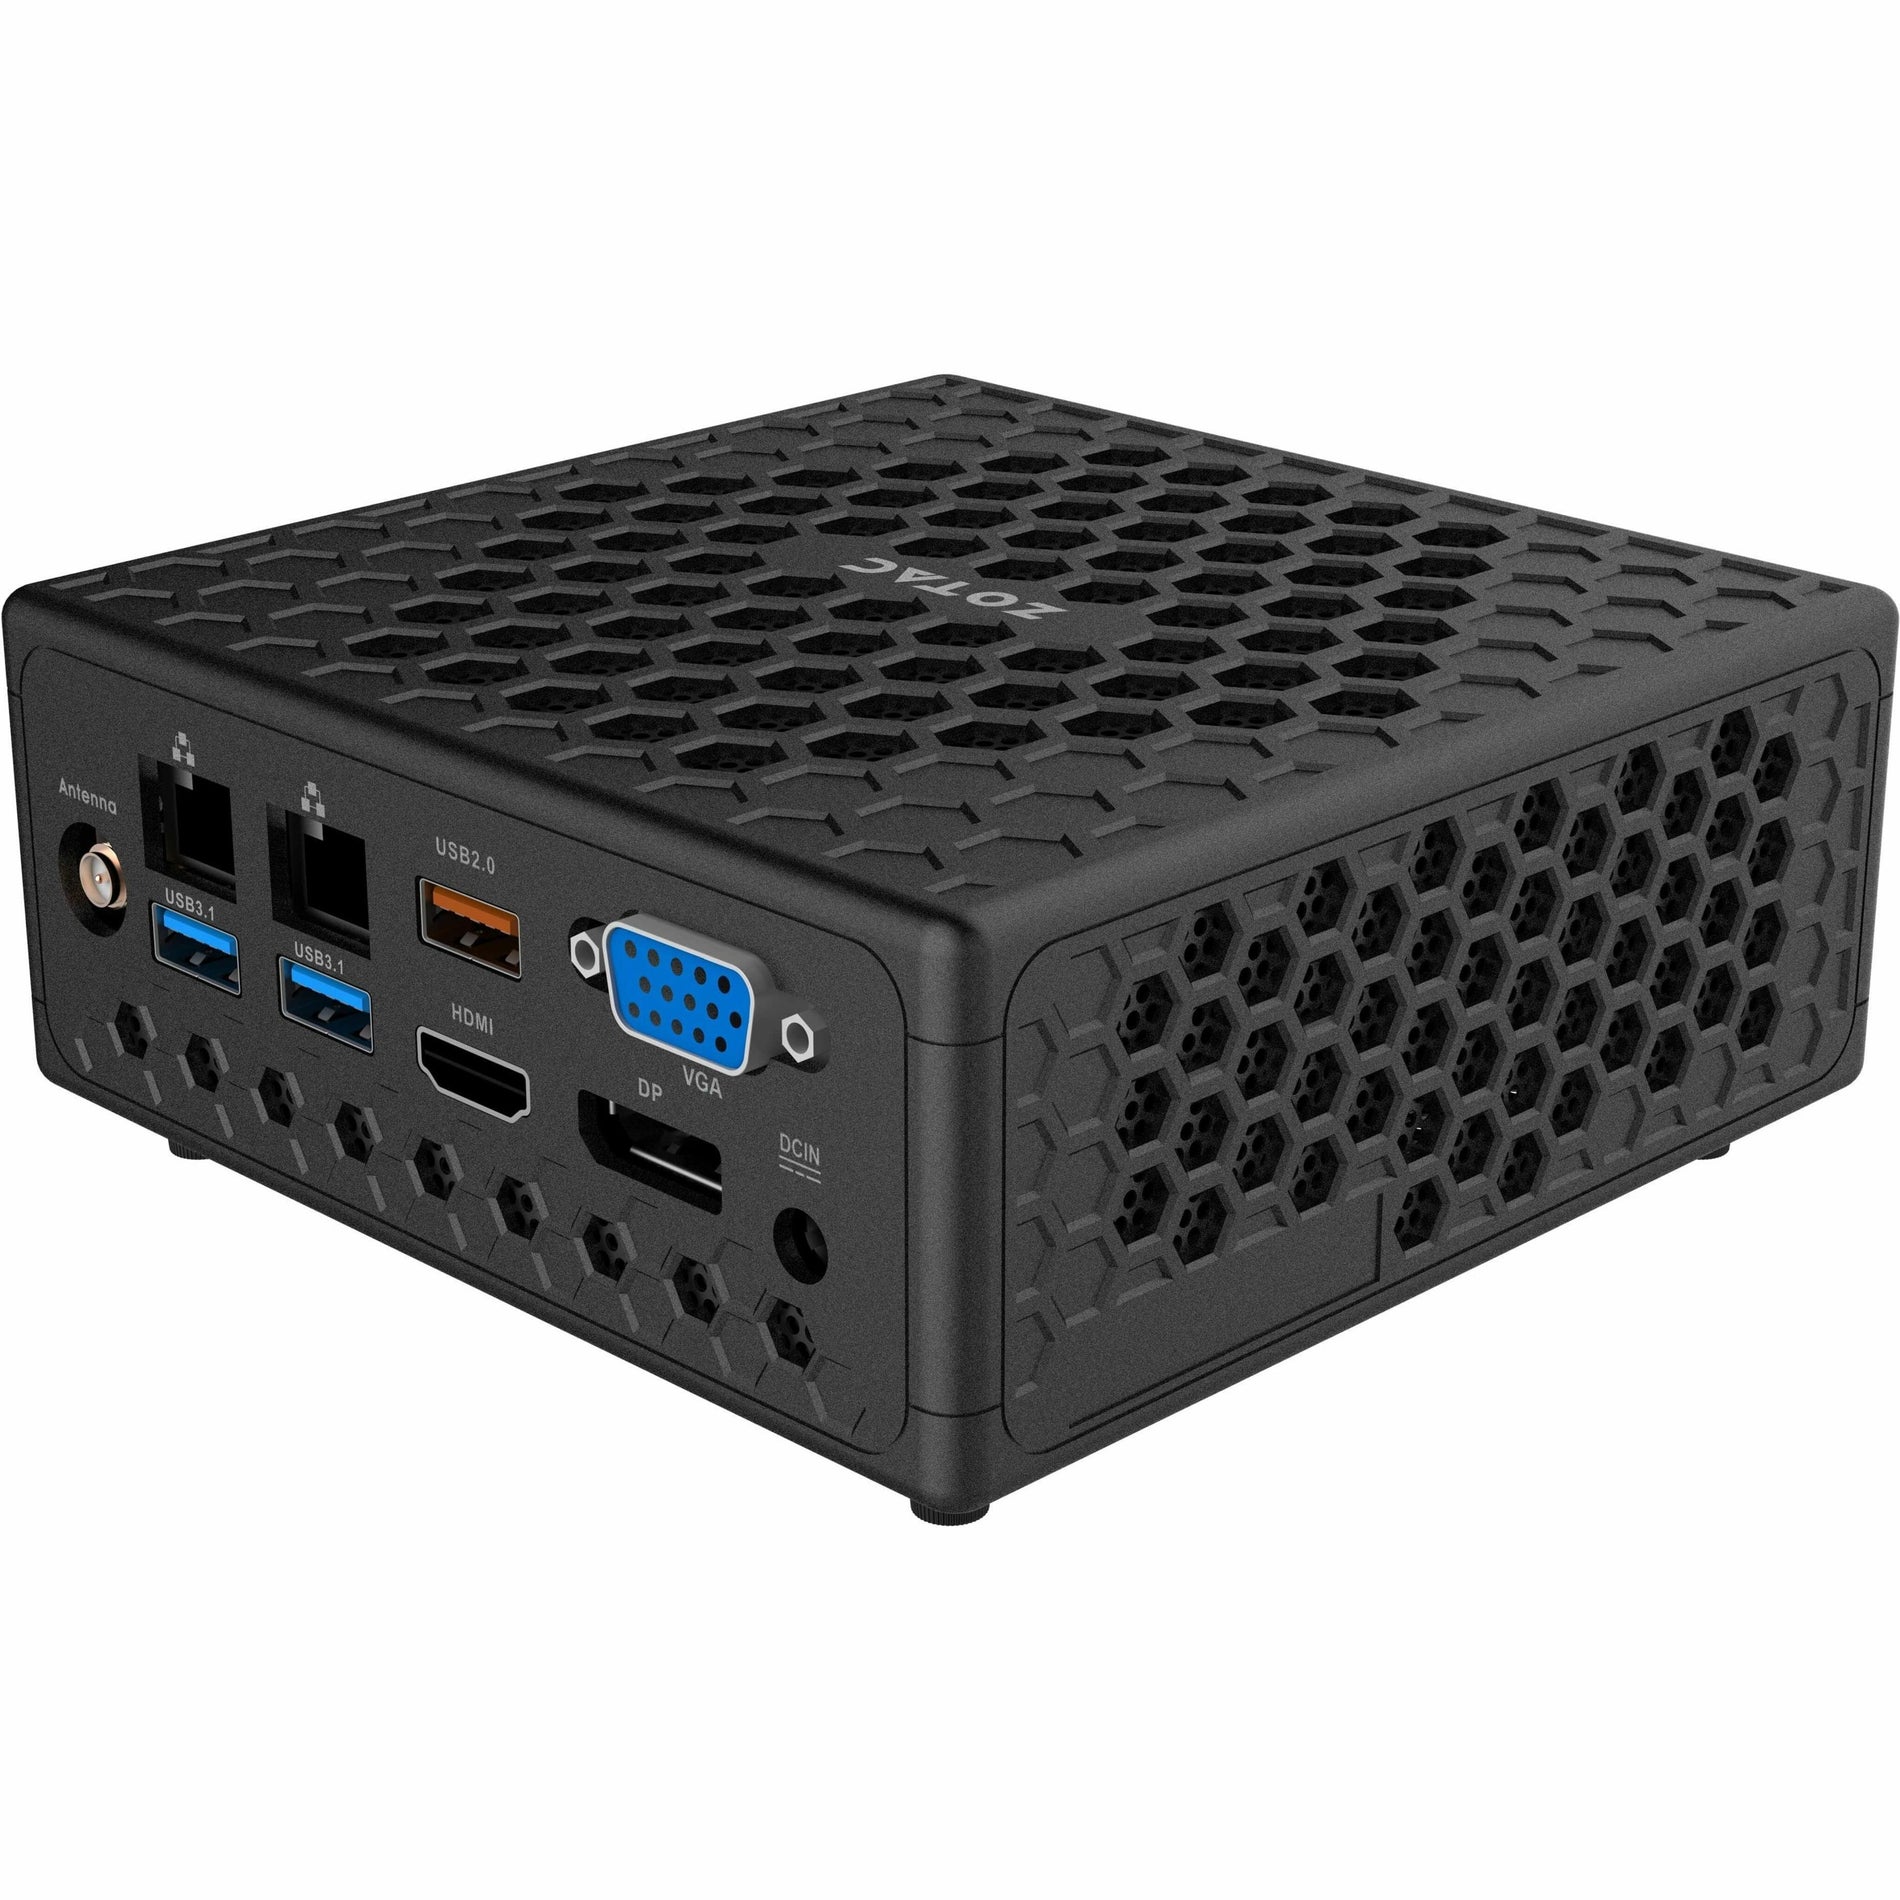 Zotac ZBOX ZBOX-CI331NANO-U Barebone System - Mini PC, Intel Celeron N5100 Quad-core (4 Core)